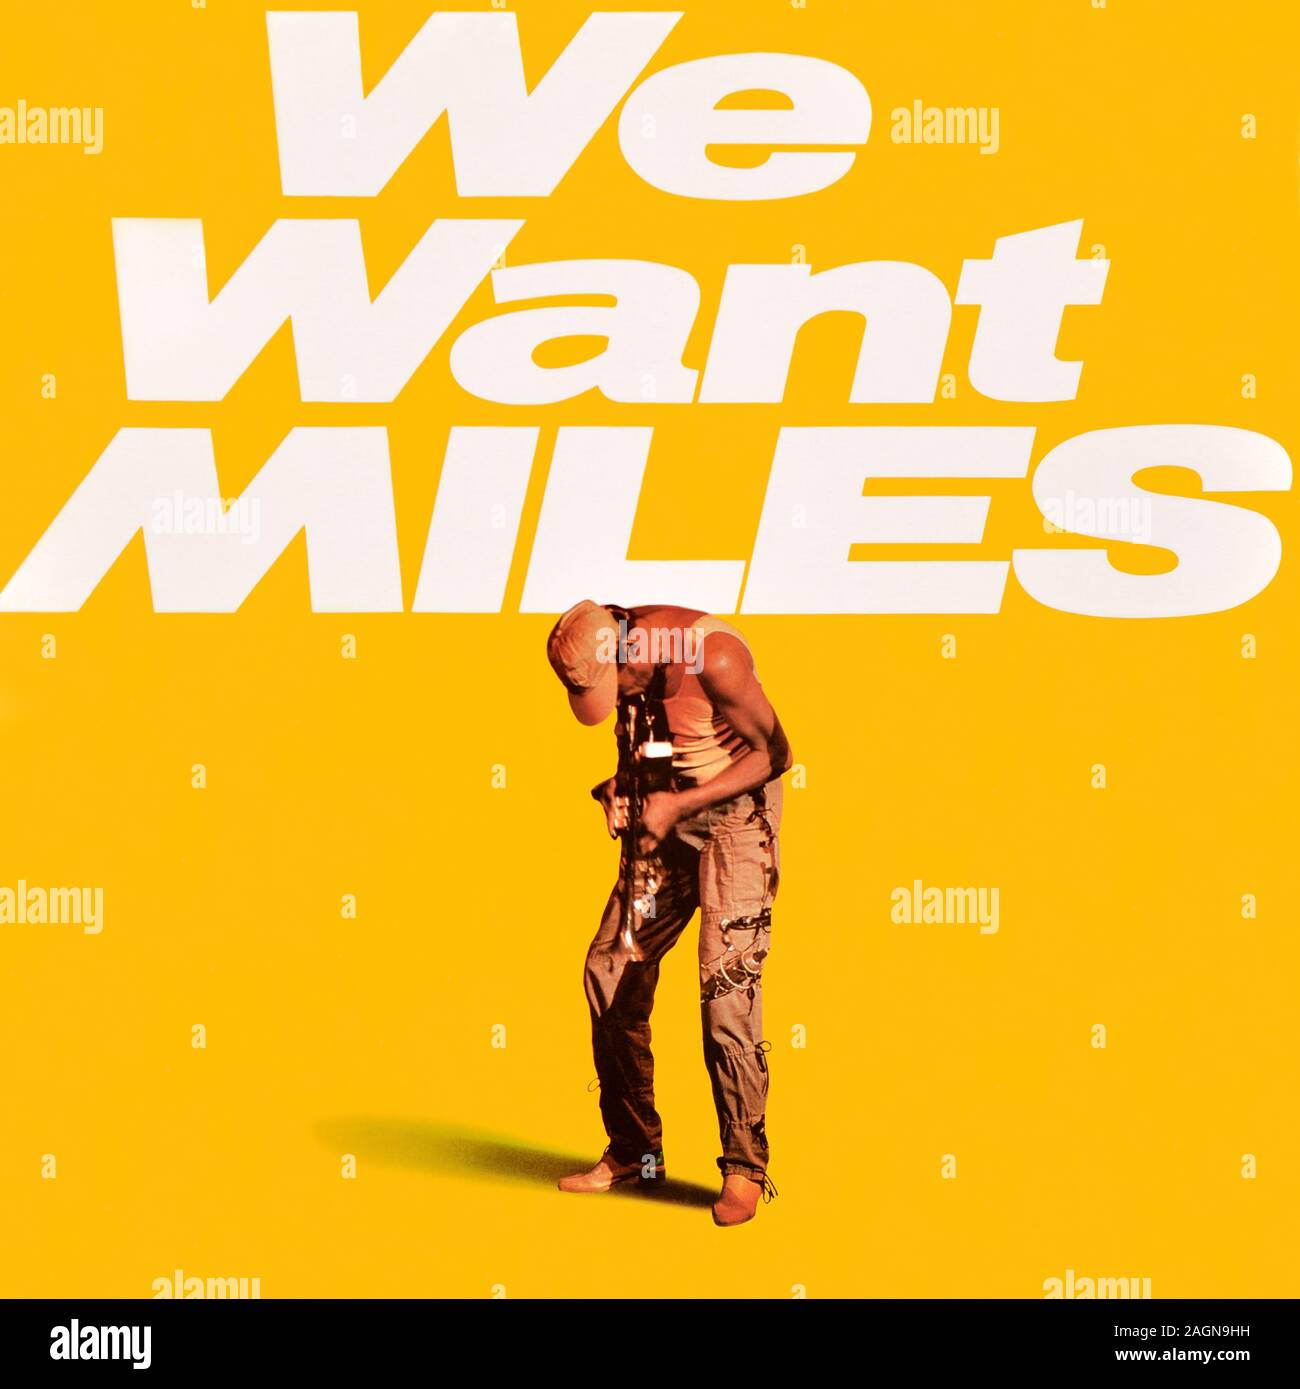 Miles Davis - original Vinyl Album Cover - We Want Miles - 1982 Stockfoto